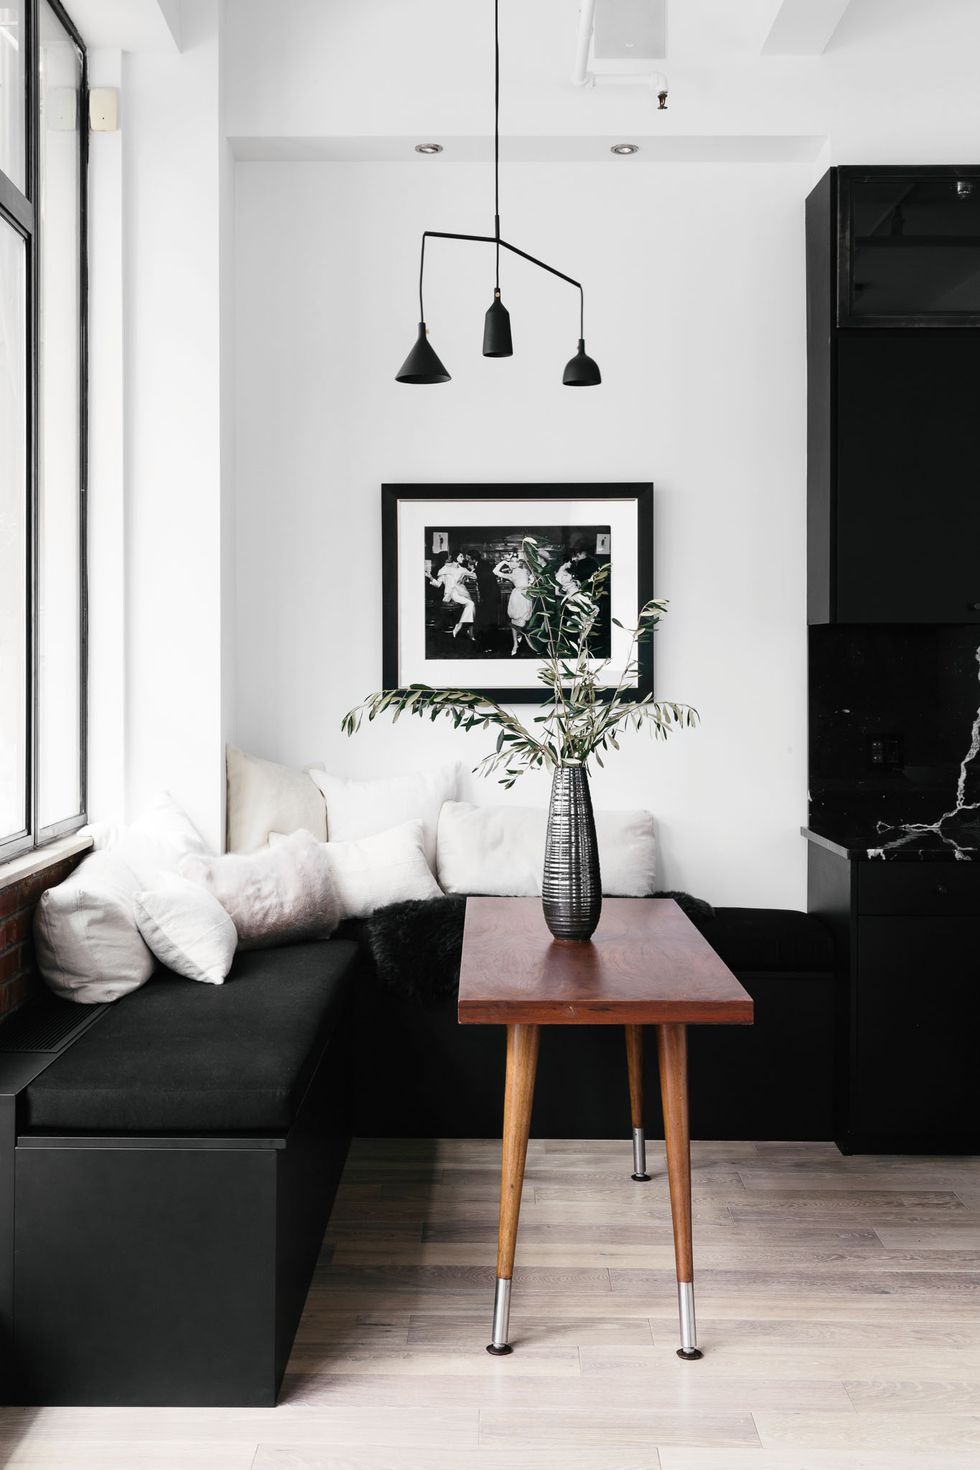 44 Striking Black White Room Ideas, White And Black Living Room Decor